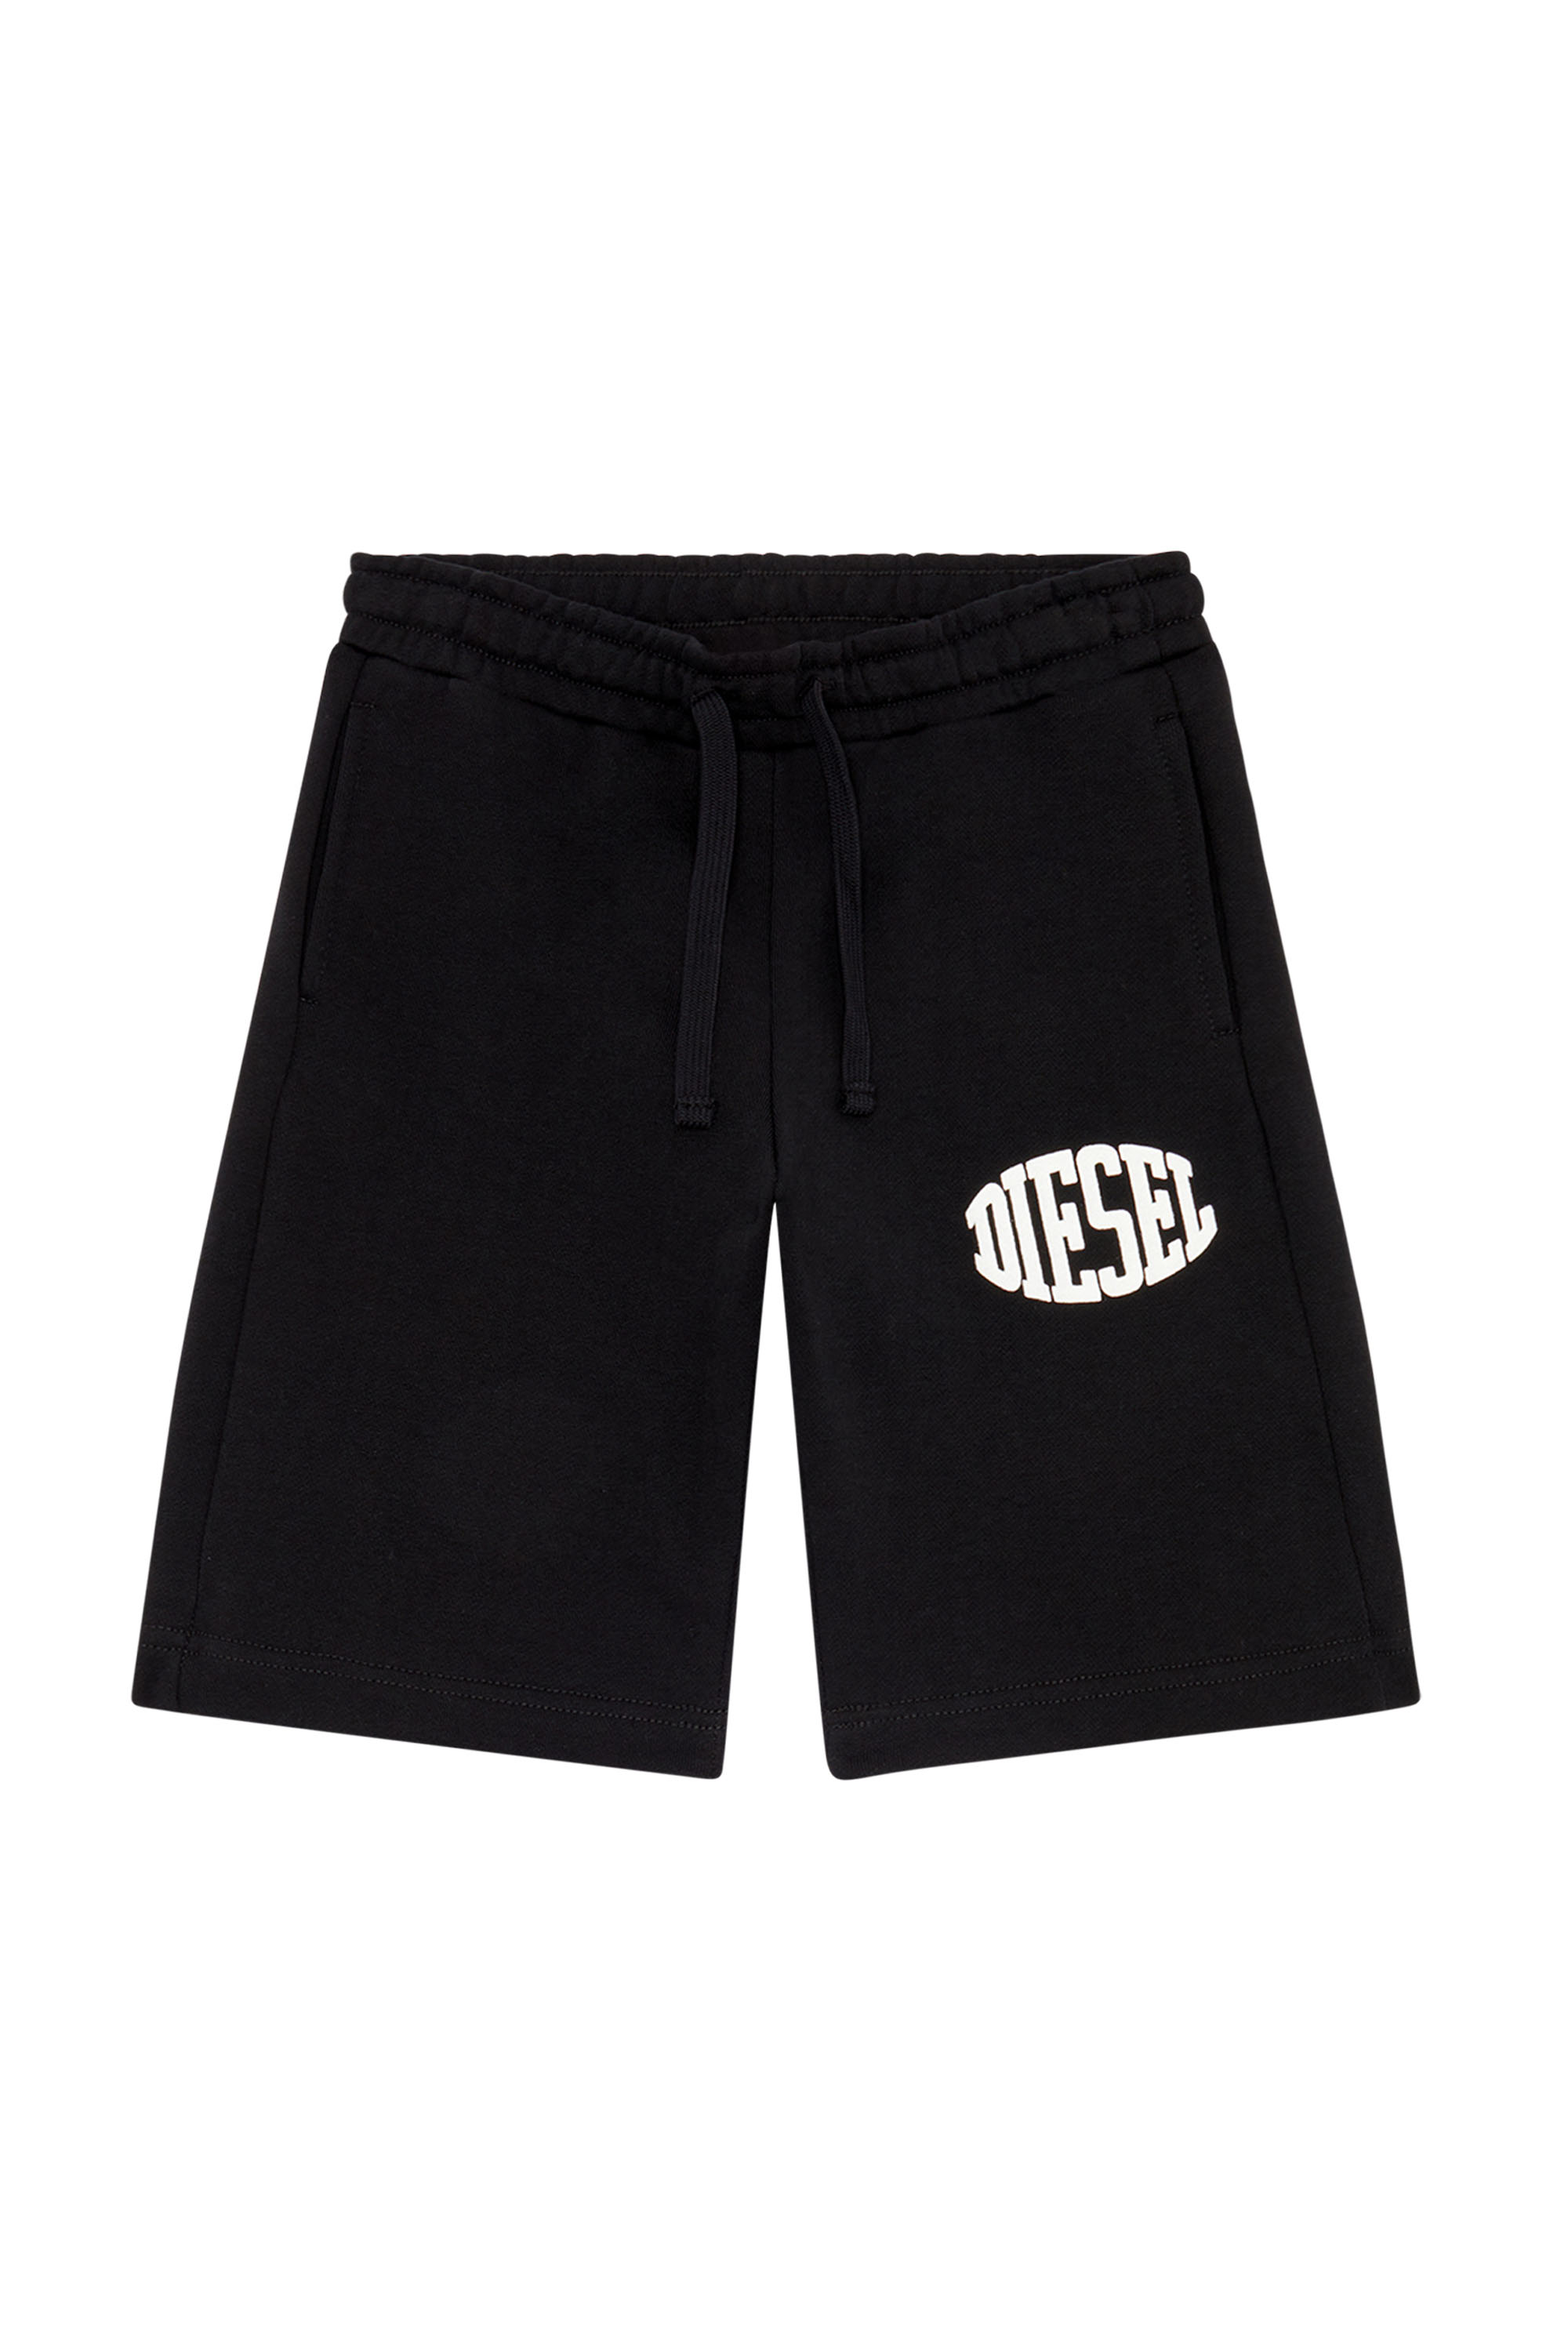 Diesel - PBOL, Man Sweat shorts with Diesel lettering in Black - Image 1